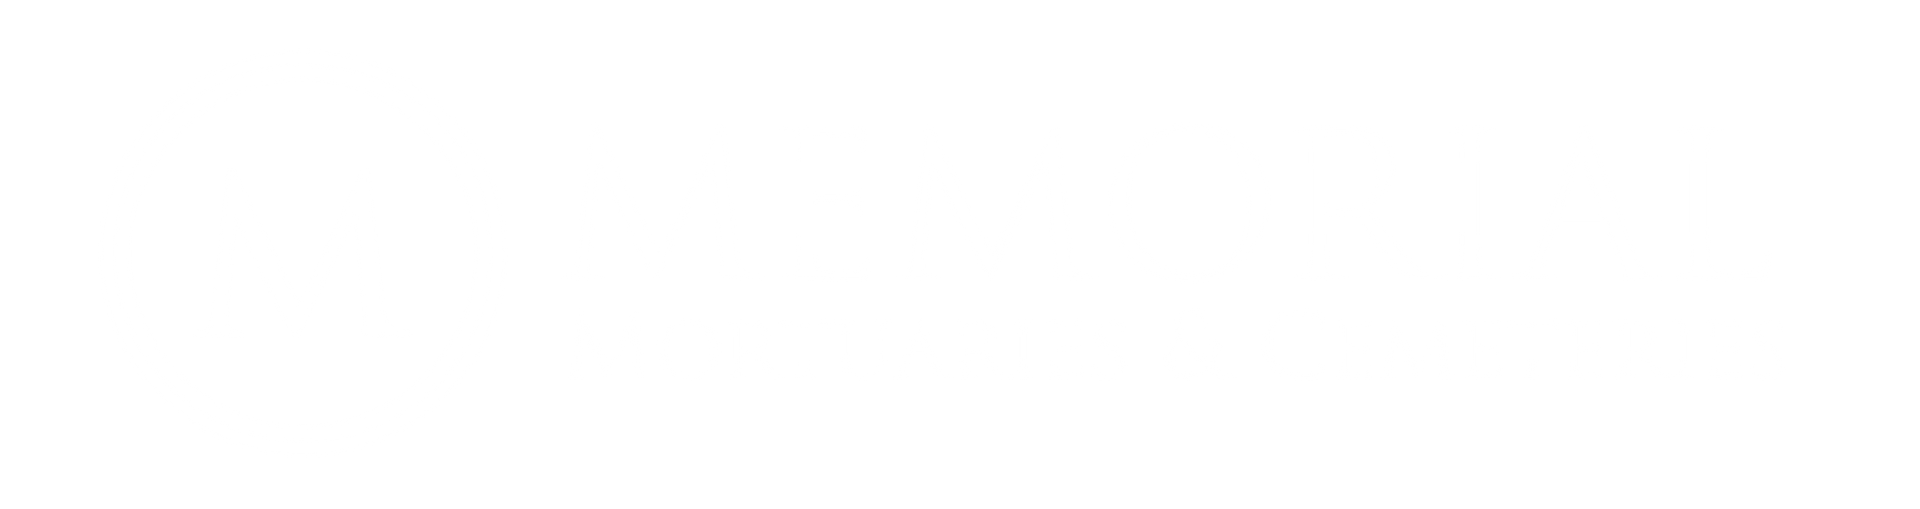 Memorial Mortuaries and Cemeteries Logo